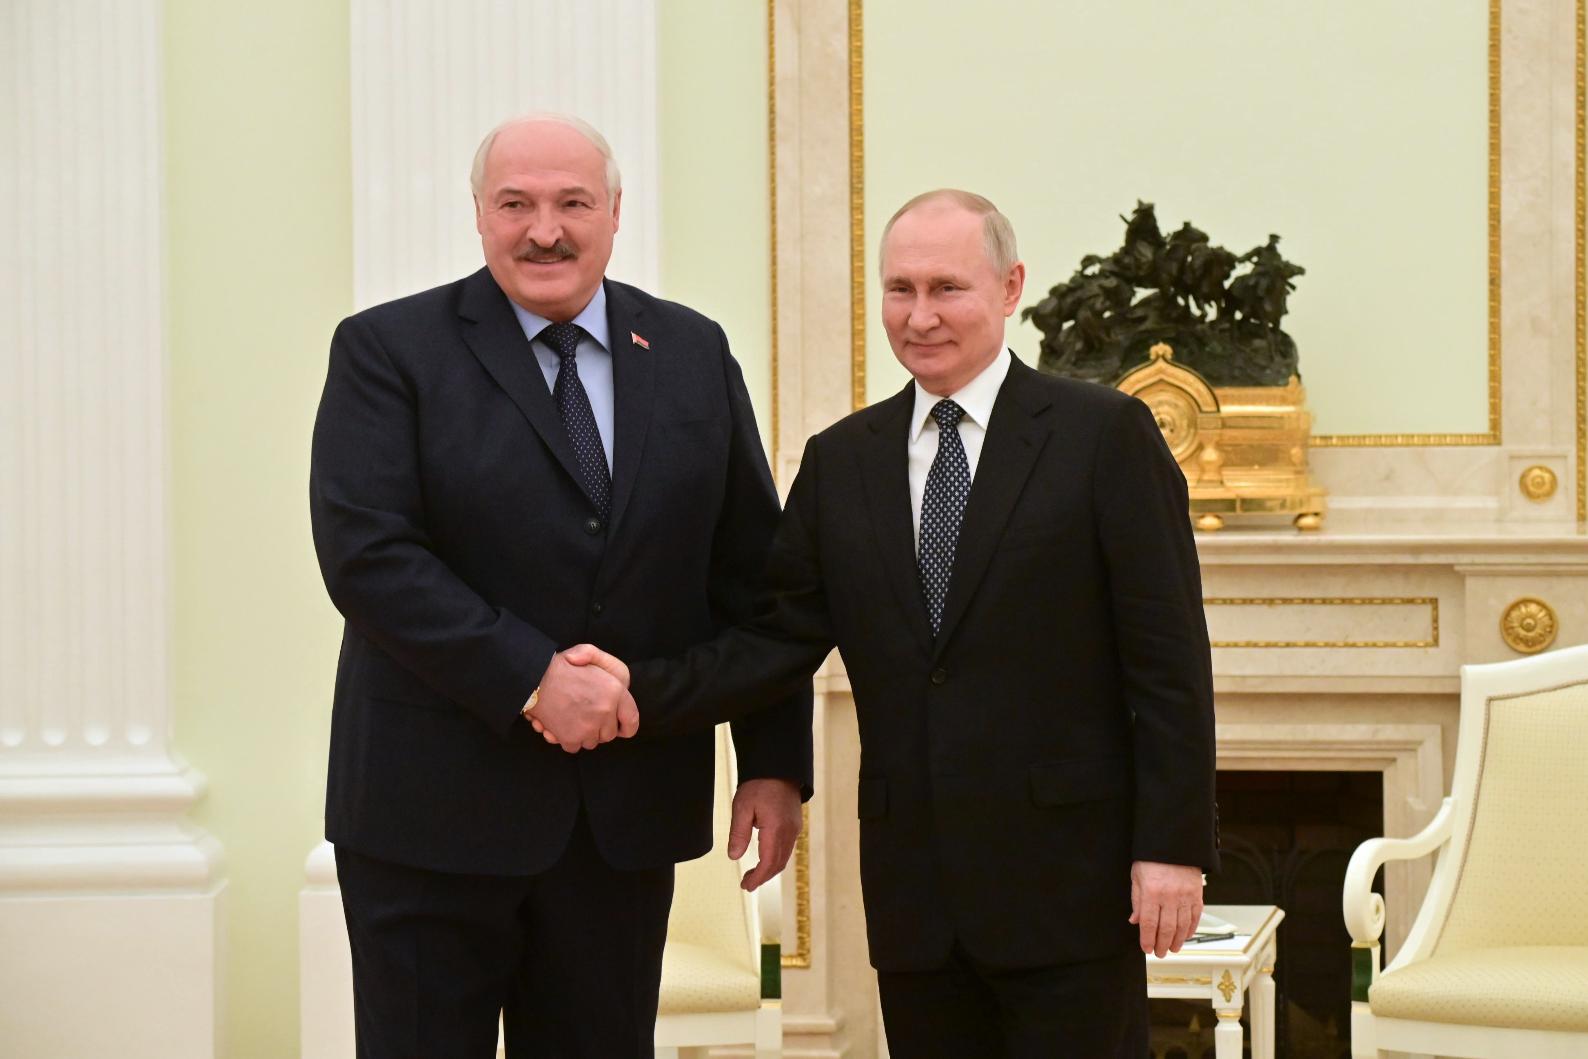  Александр Лукашенко заявил о планах встретиться с Владимиром Путиным 15 октября в Киргизии